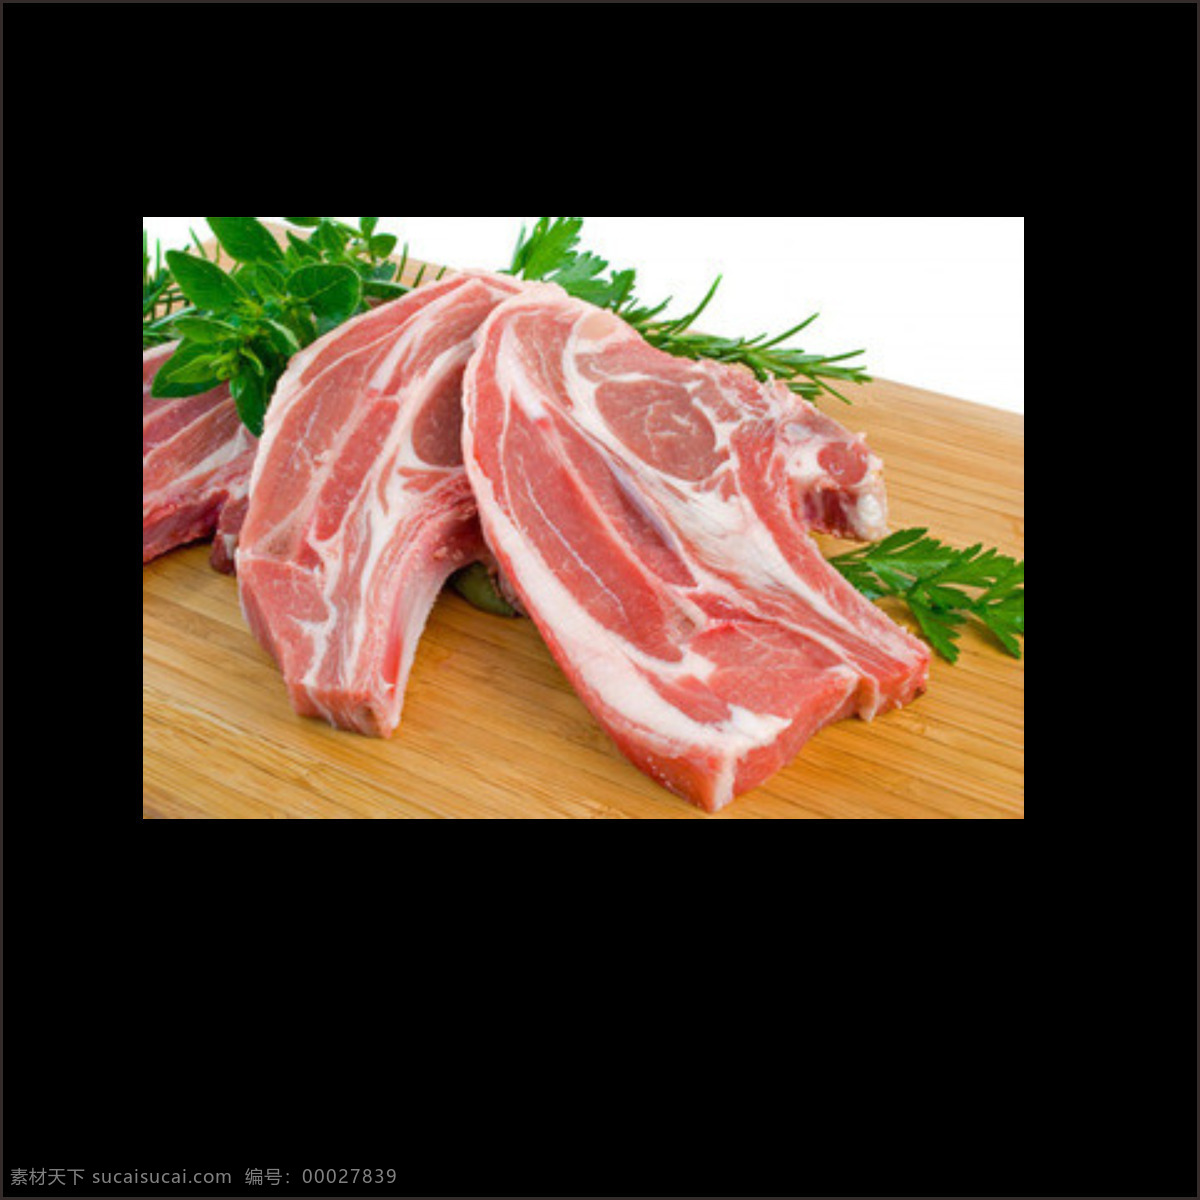 美味 食物 新鲜 生肉 集合 美味食物 五花肉 肉类素材 蔬菜 营养 原材食物 新鲜生肉 木板案板 新鲜食材